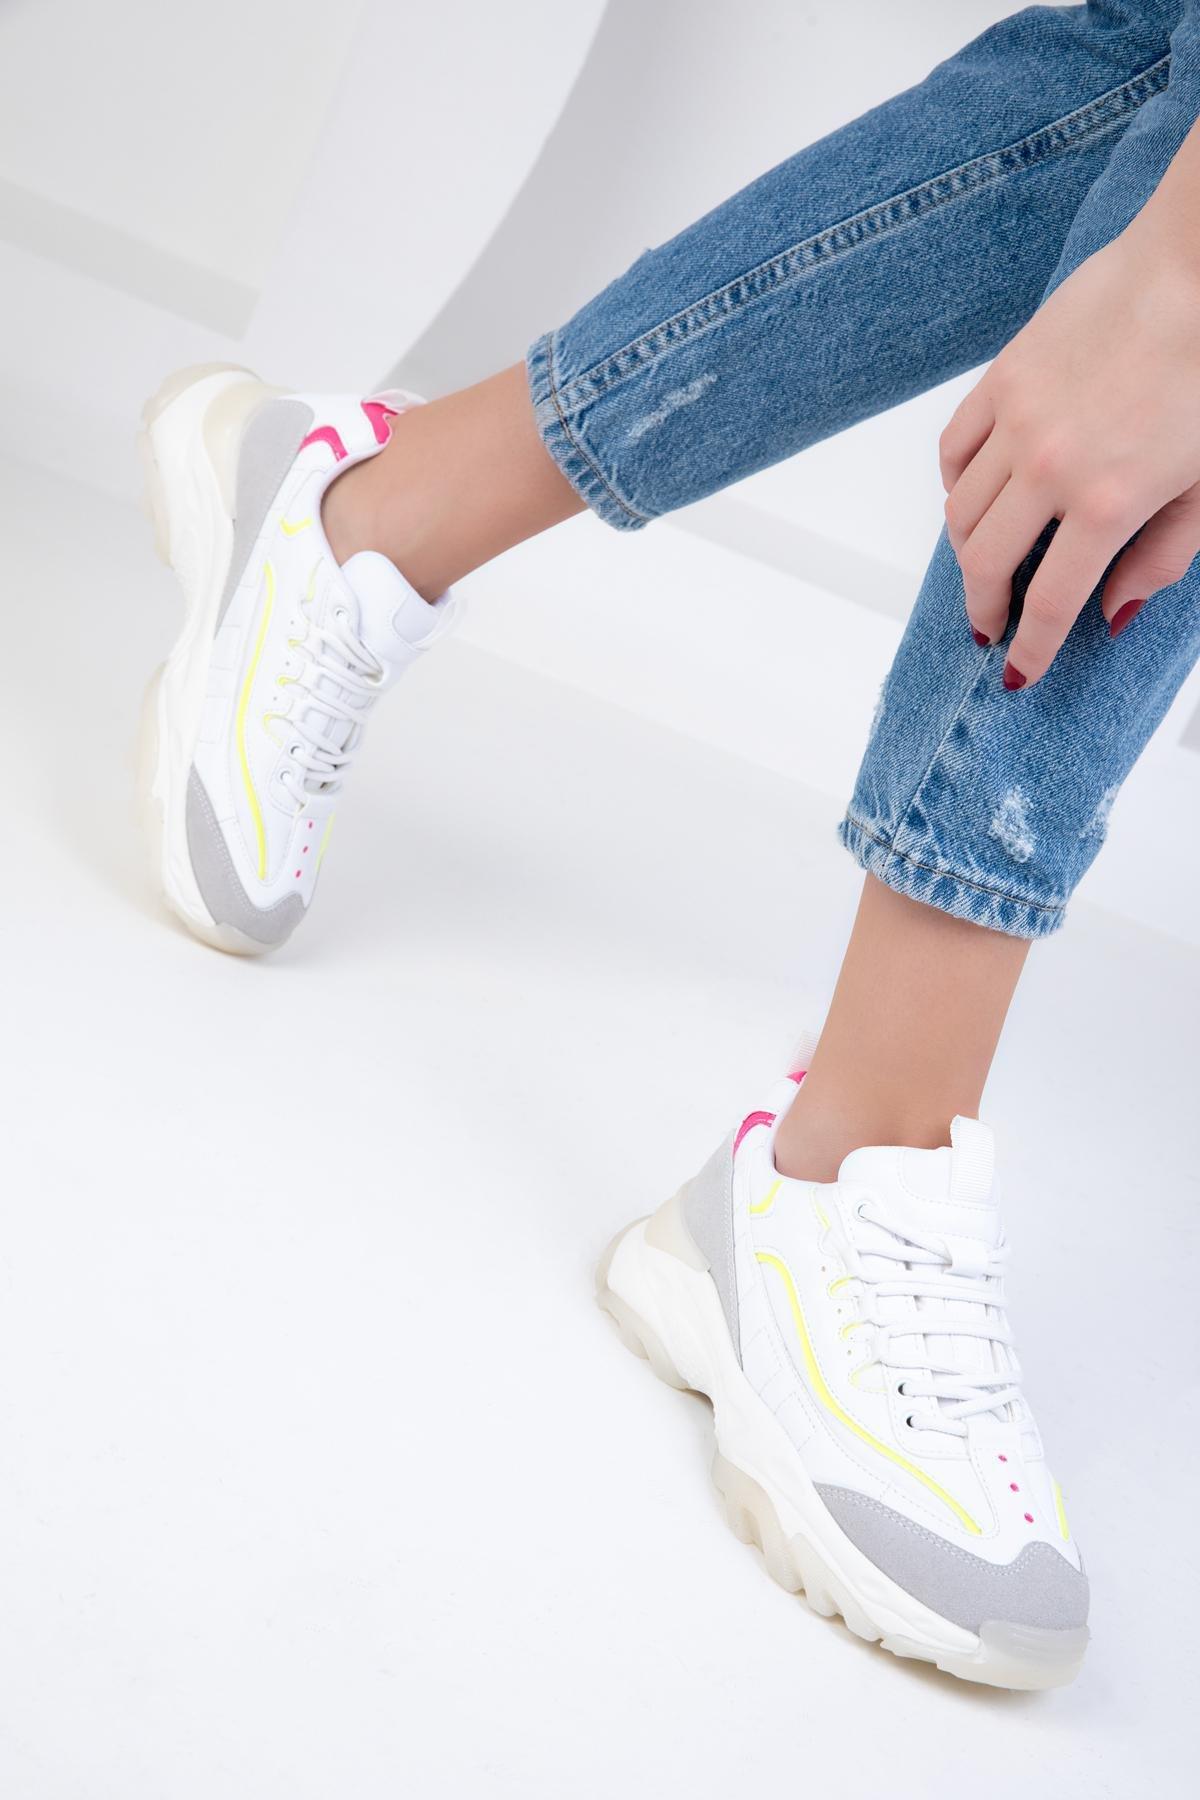 SOHO - White Chunky Sneakers